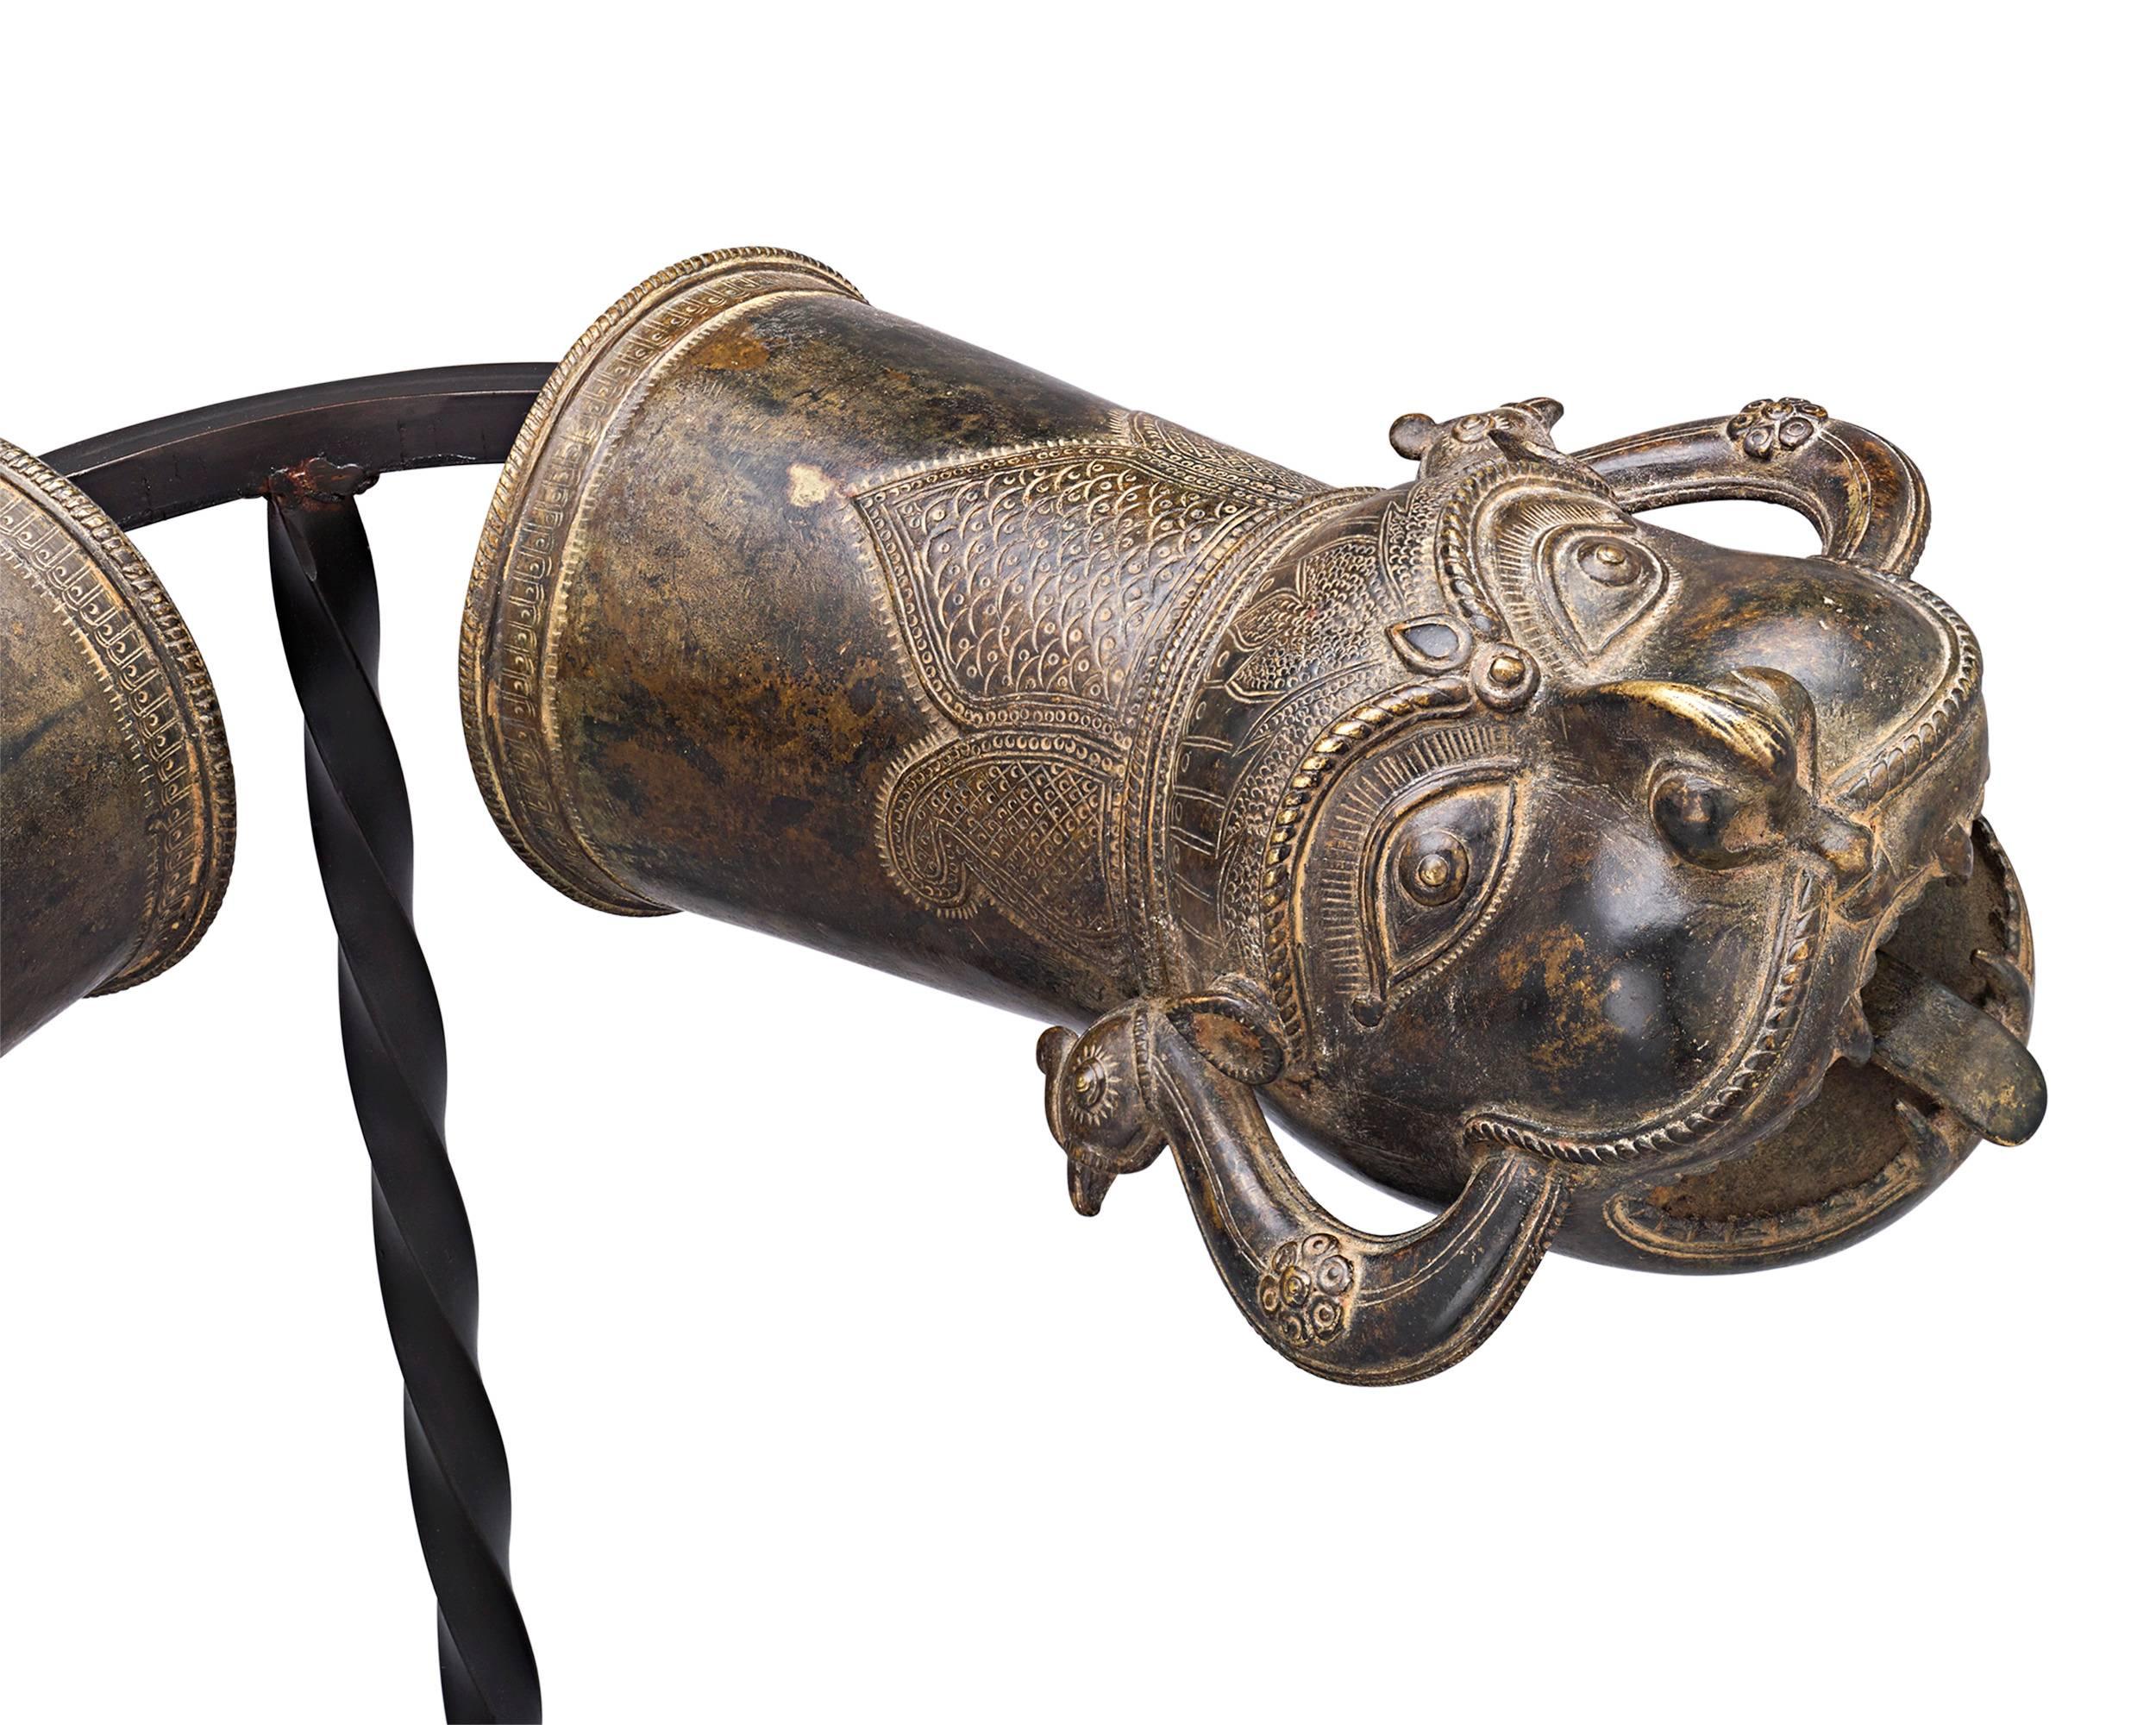 Ces épis de palanquin en bronze indien du XVIIIe siècle sont magnifiquement stylisés et façonnés en forme de créatures mythologiques protectrices. Les palanquins, ou 